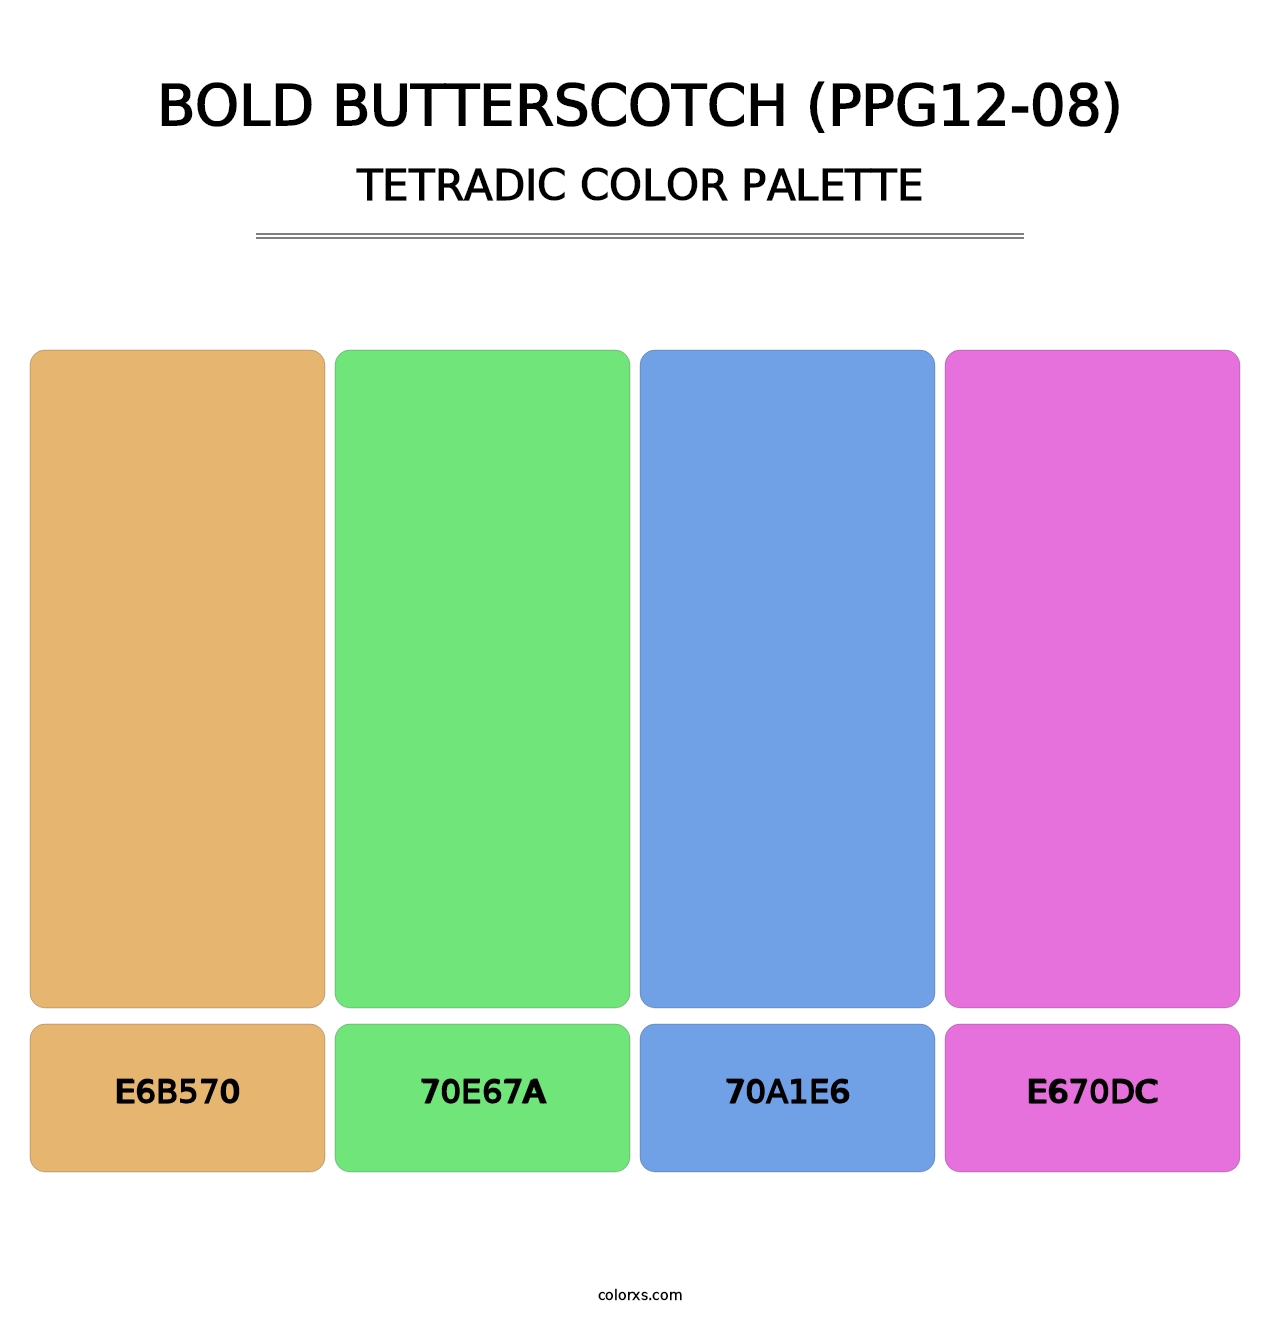 Bold Butterscotch (PPG12-08) - Tetradic Color Palette